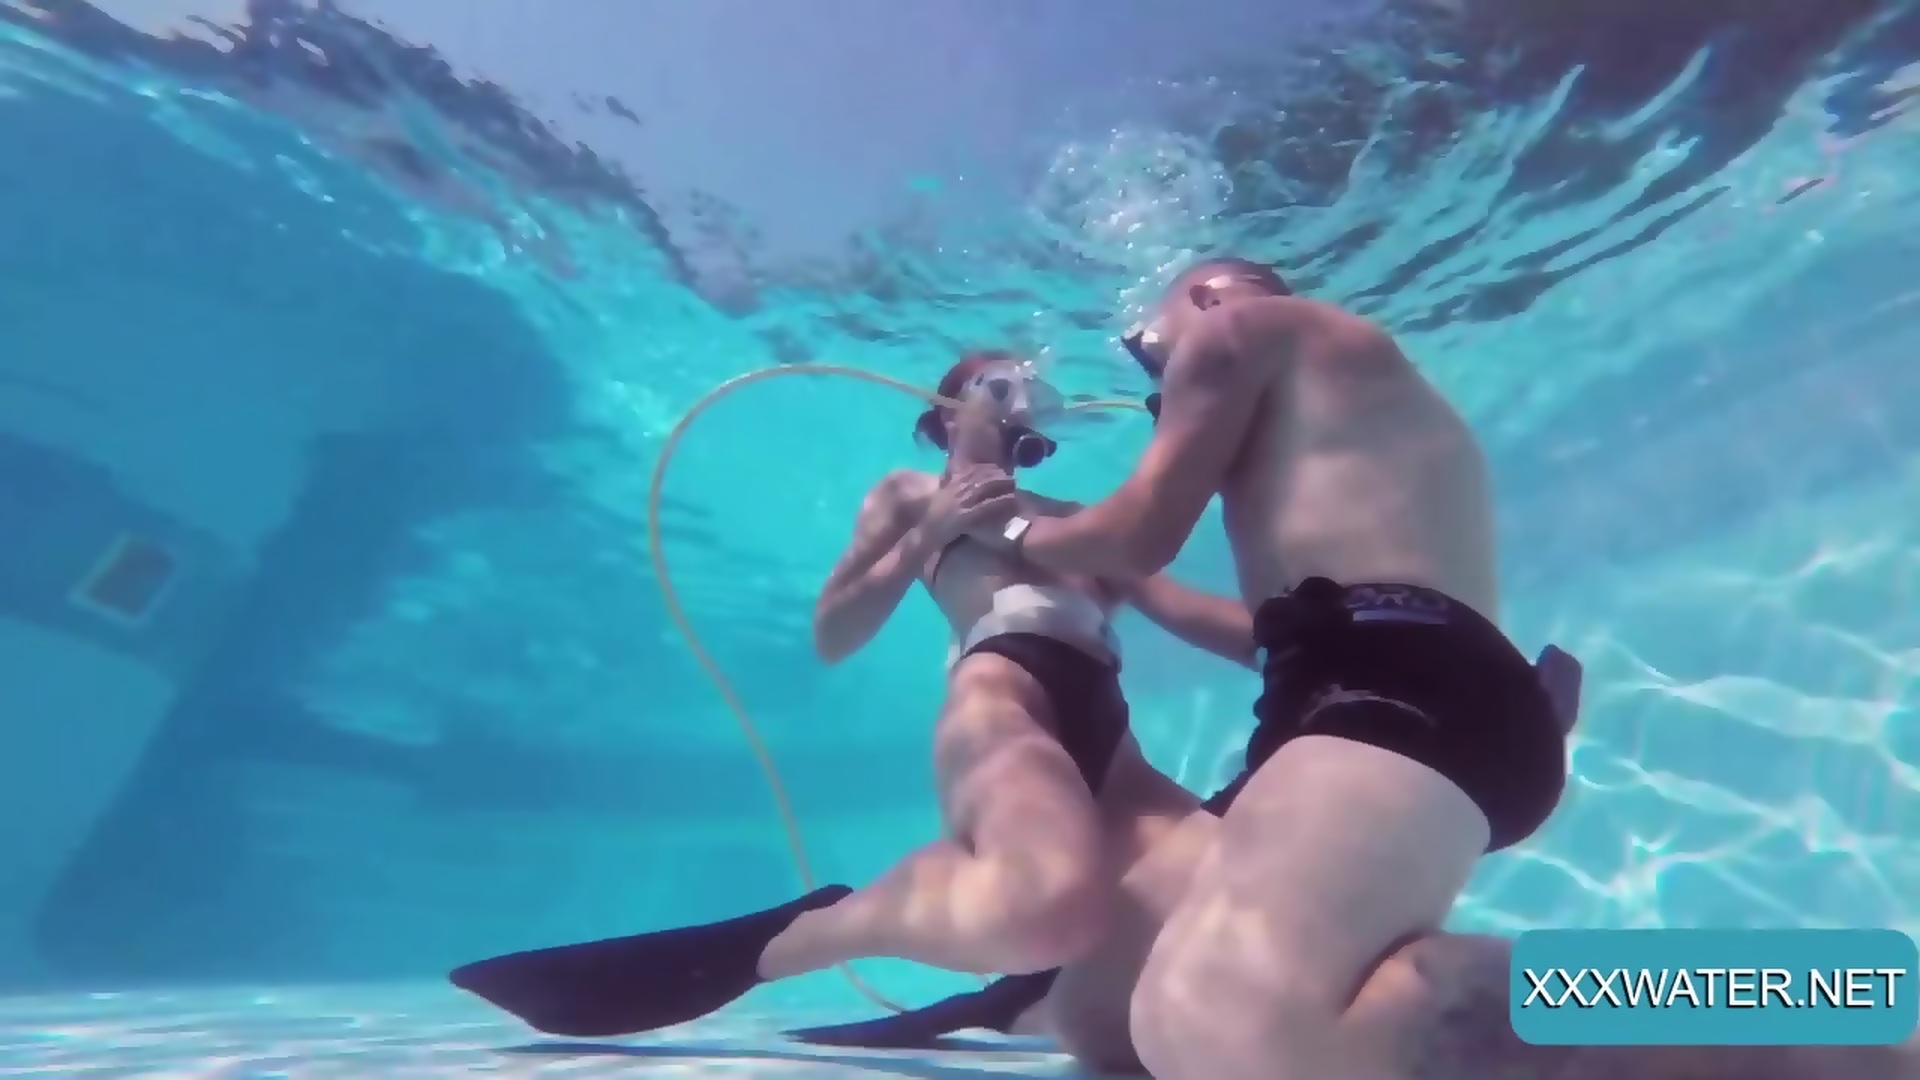 nikki chow voyeur girls underwater videos Sex Pics Hd